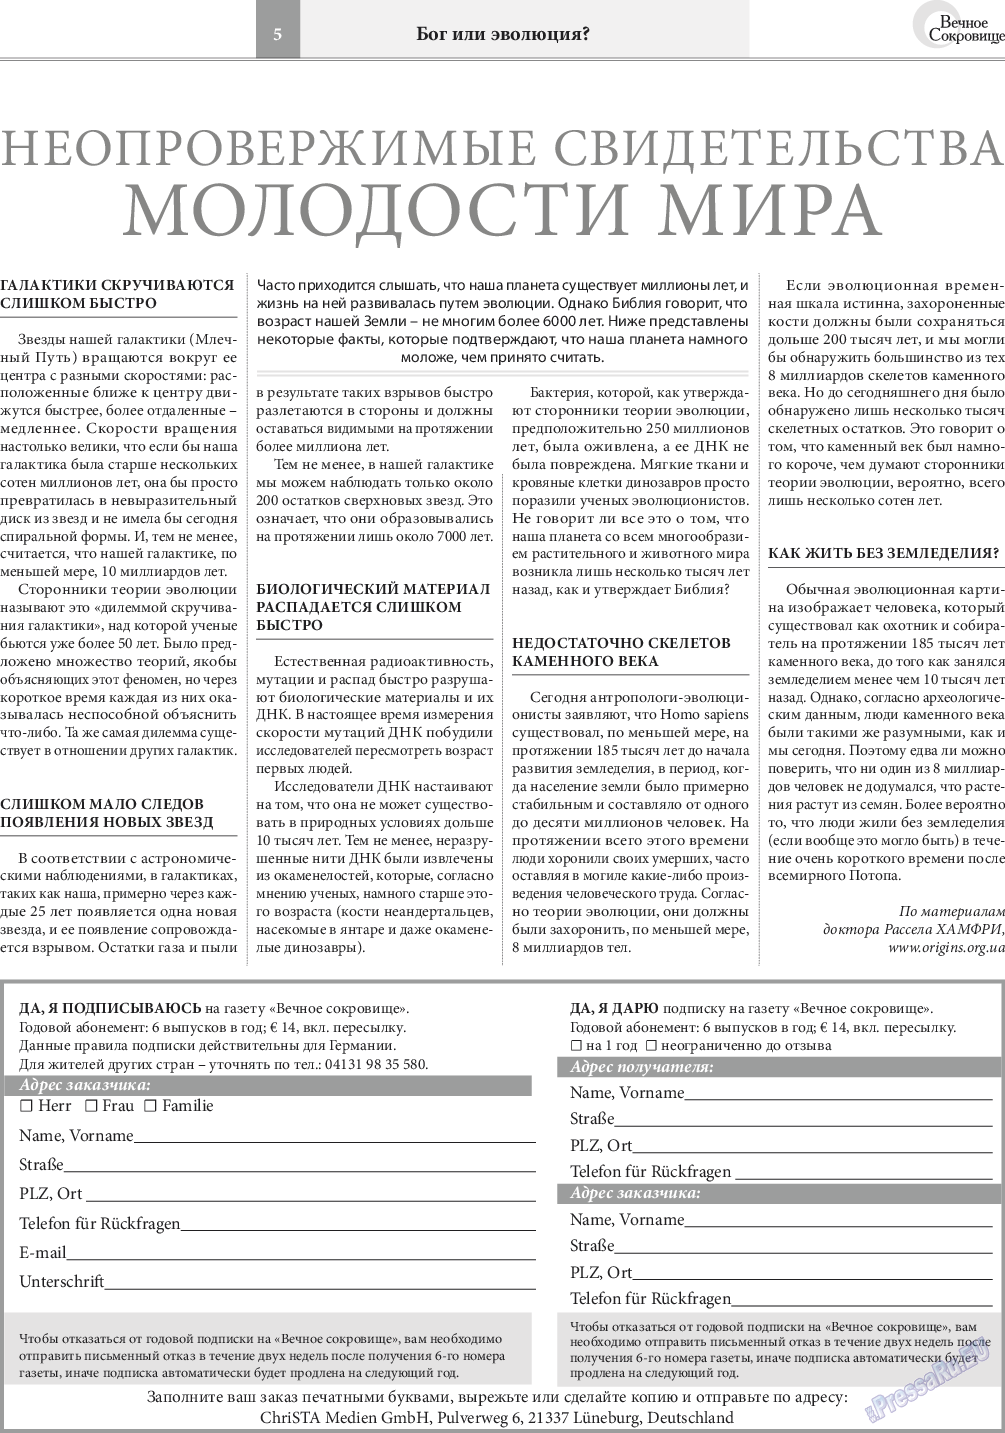 Вечное сокровище, газета. 2016 №4 стр.5